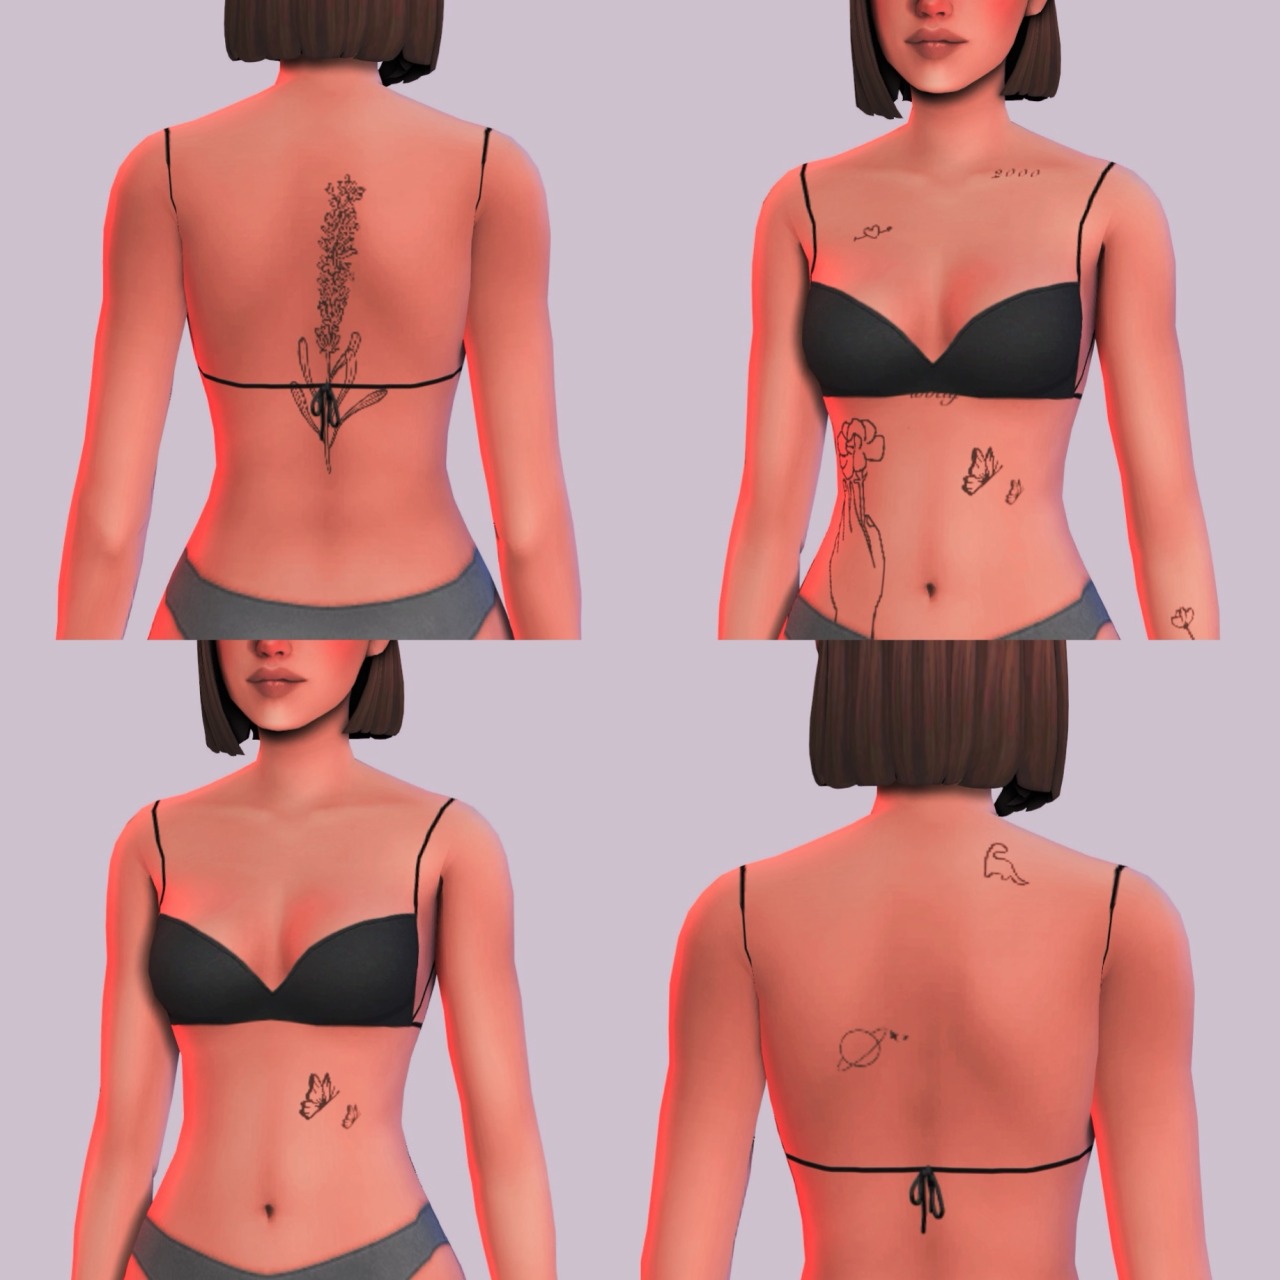 Mod The Sims  Skeleton Arm Tattoo Set